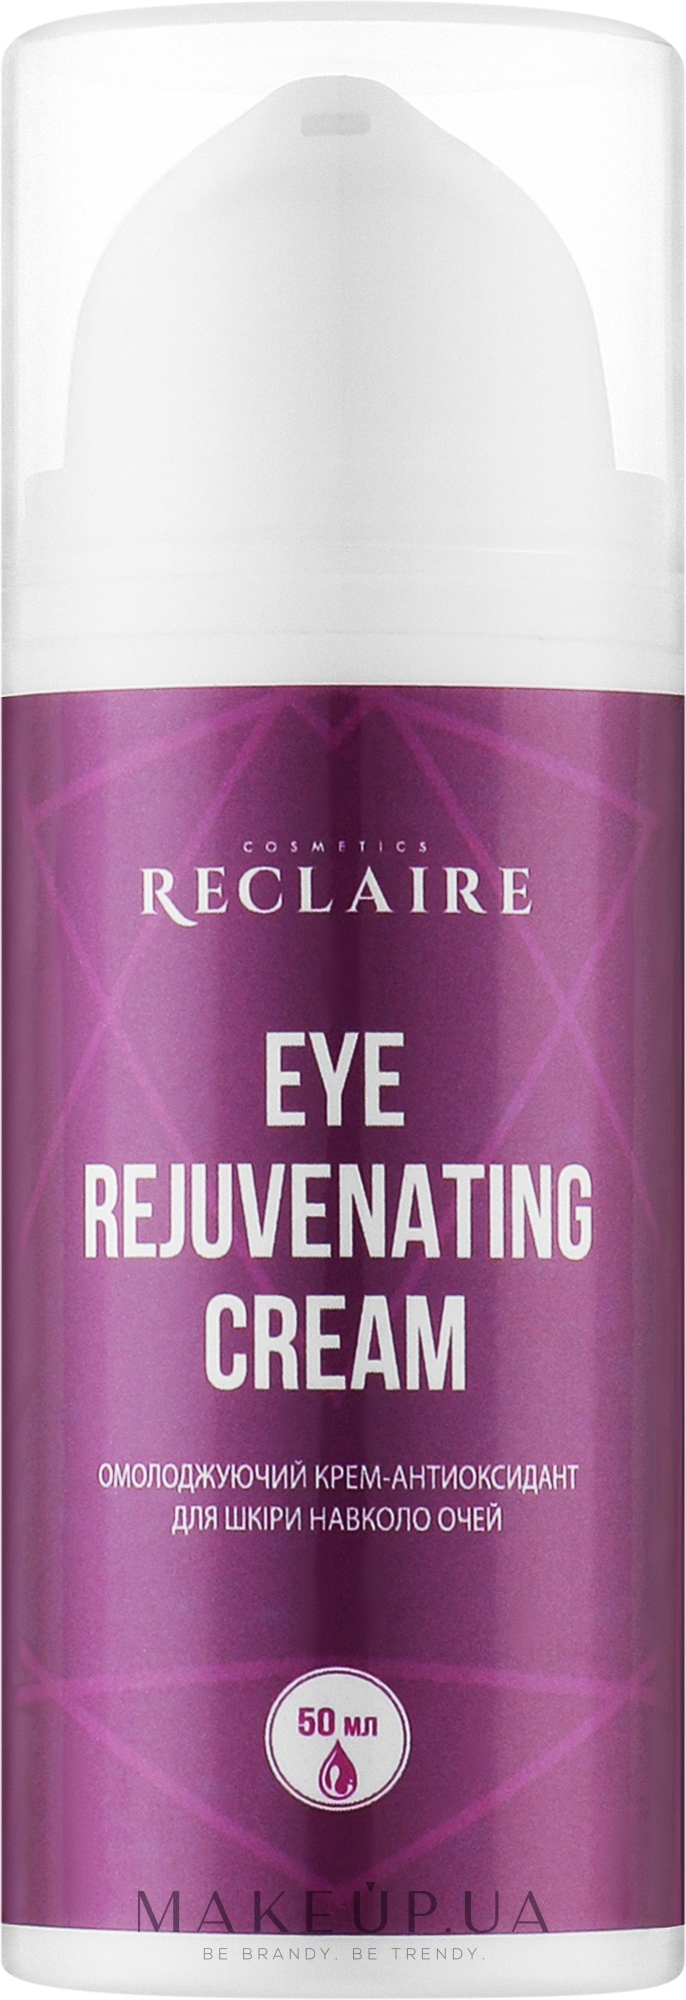 Омолоджуючий крем-антиоксидант для шкіри навколо очей - Reclaire Rejuvenating Eye Cream — фото 30ml